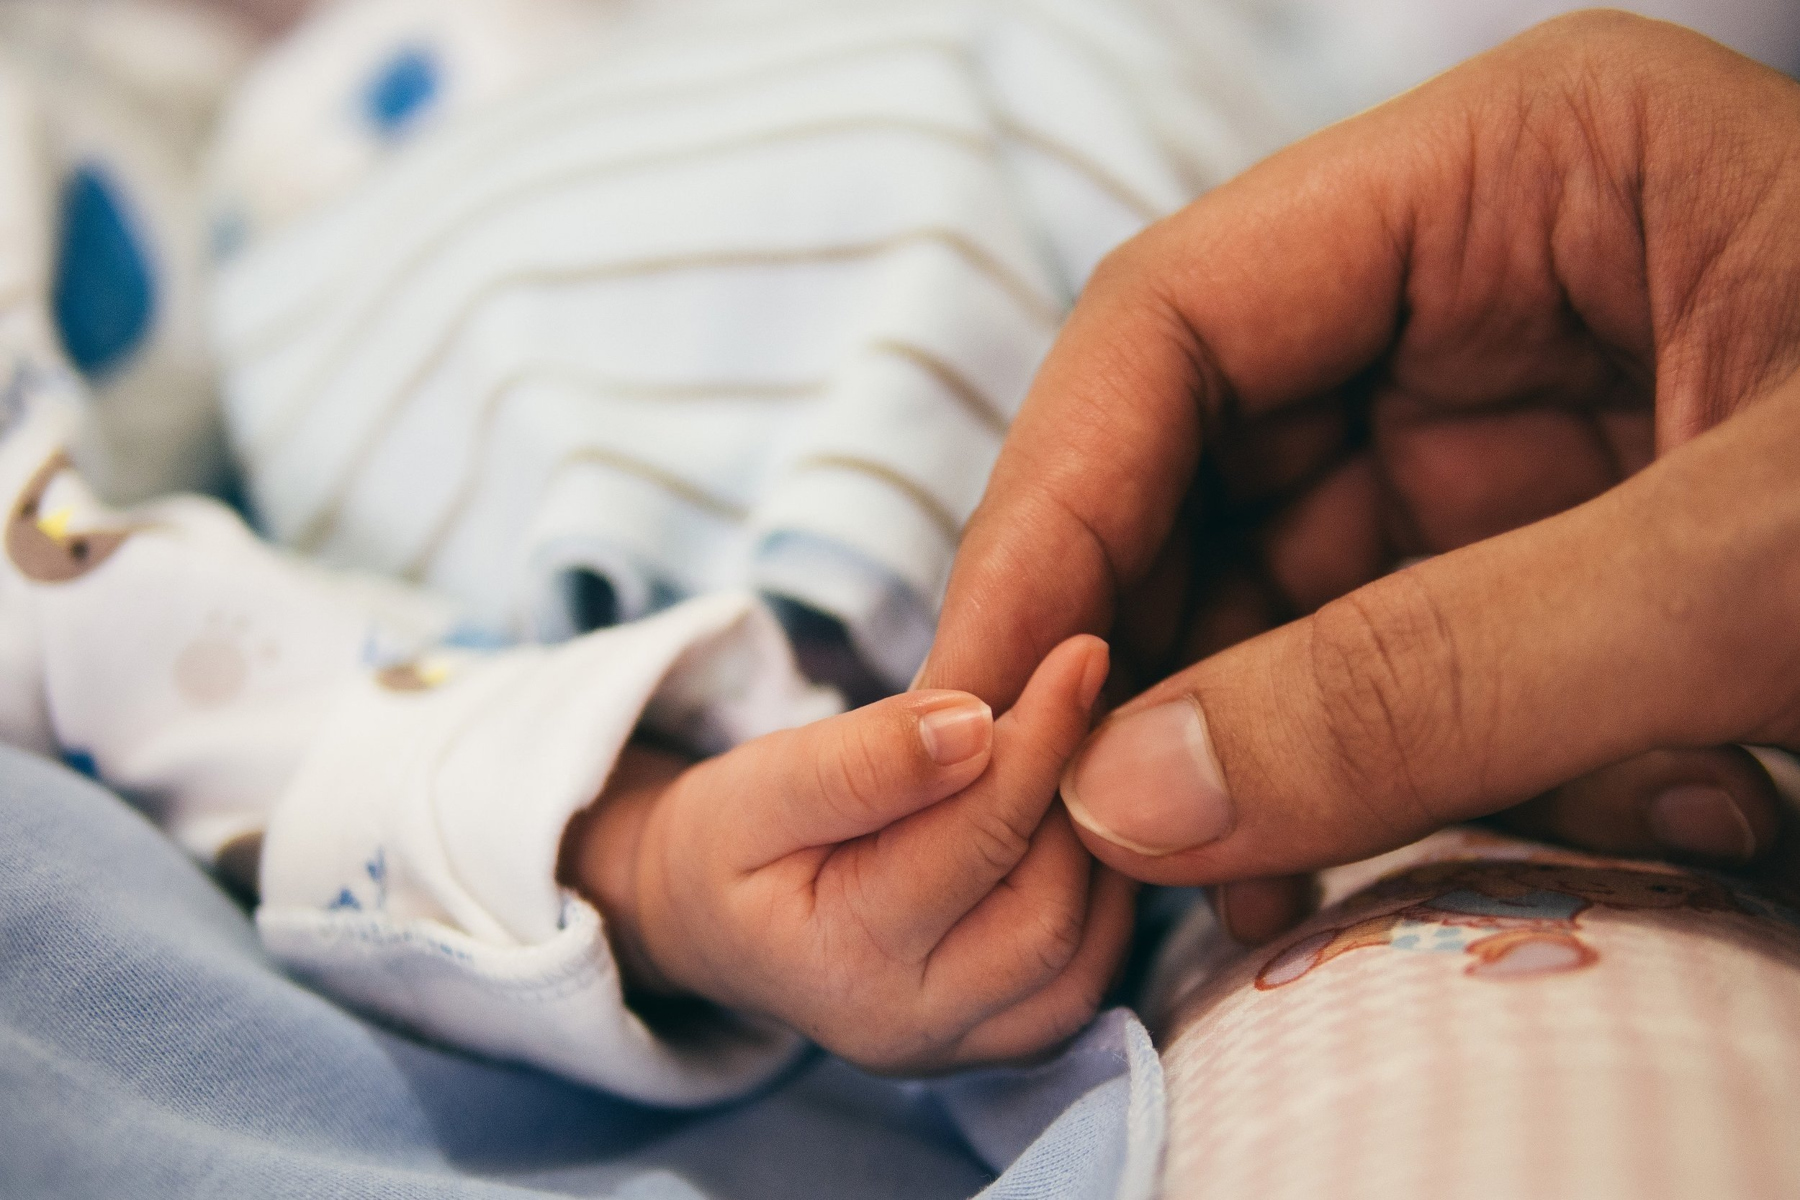 Προεκλαμψία ορισμός: Γιατί η προεκλαμψία οδηγεί σε μητρική και βρεφική θνησιμότητα;